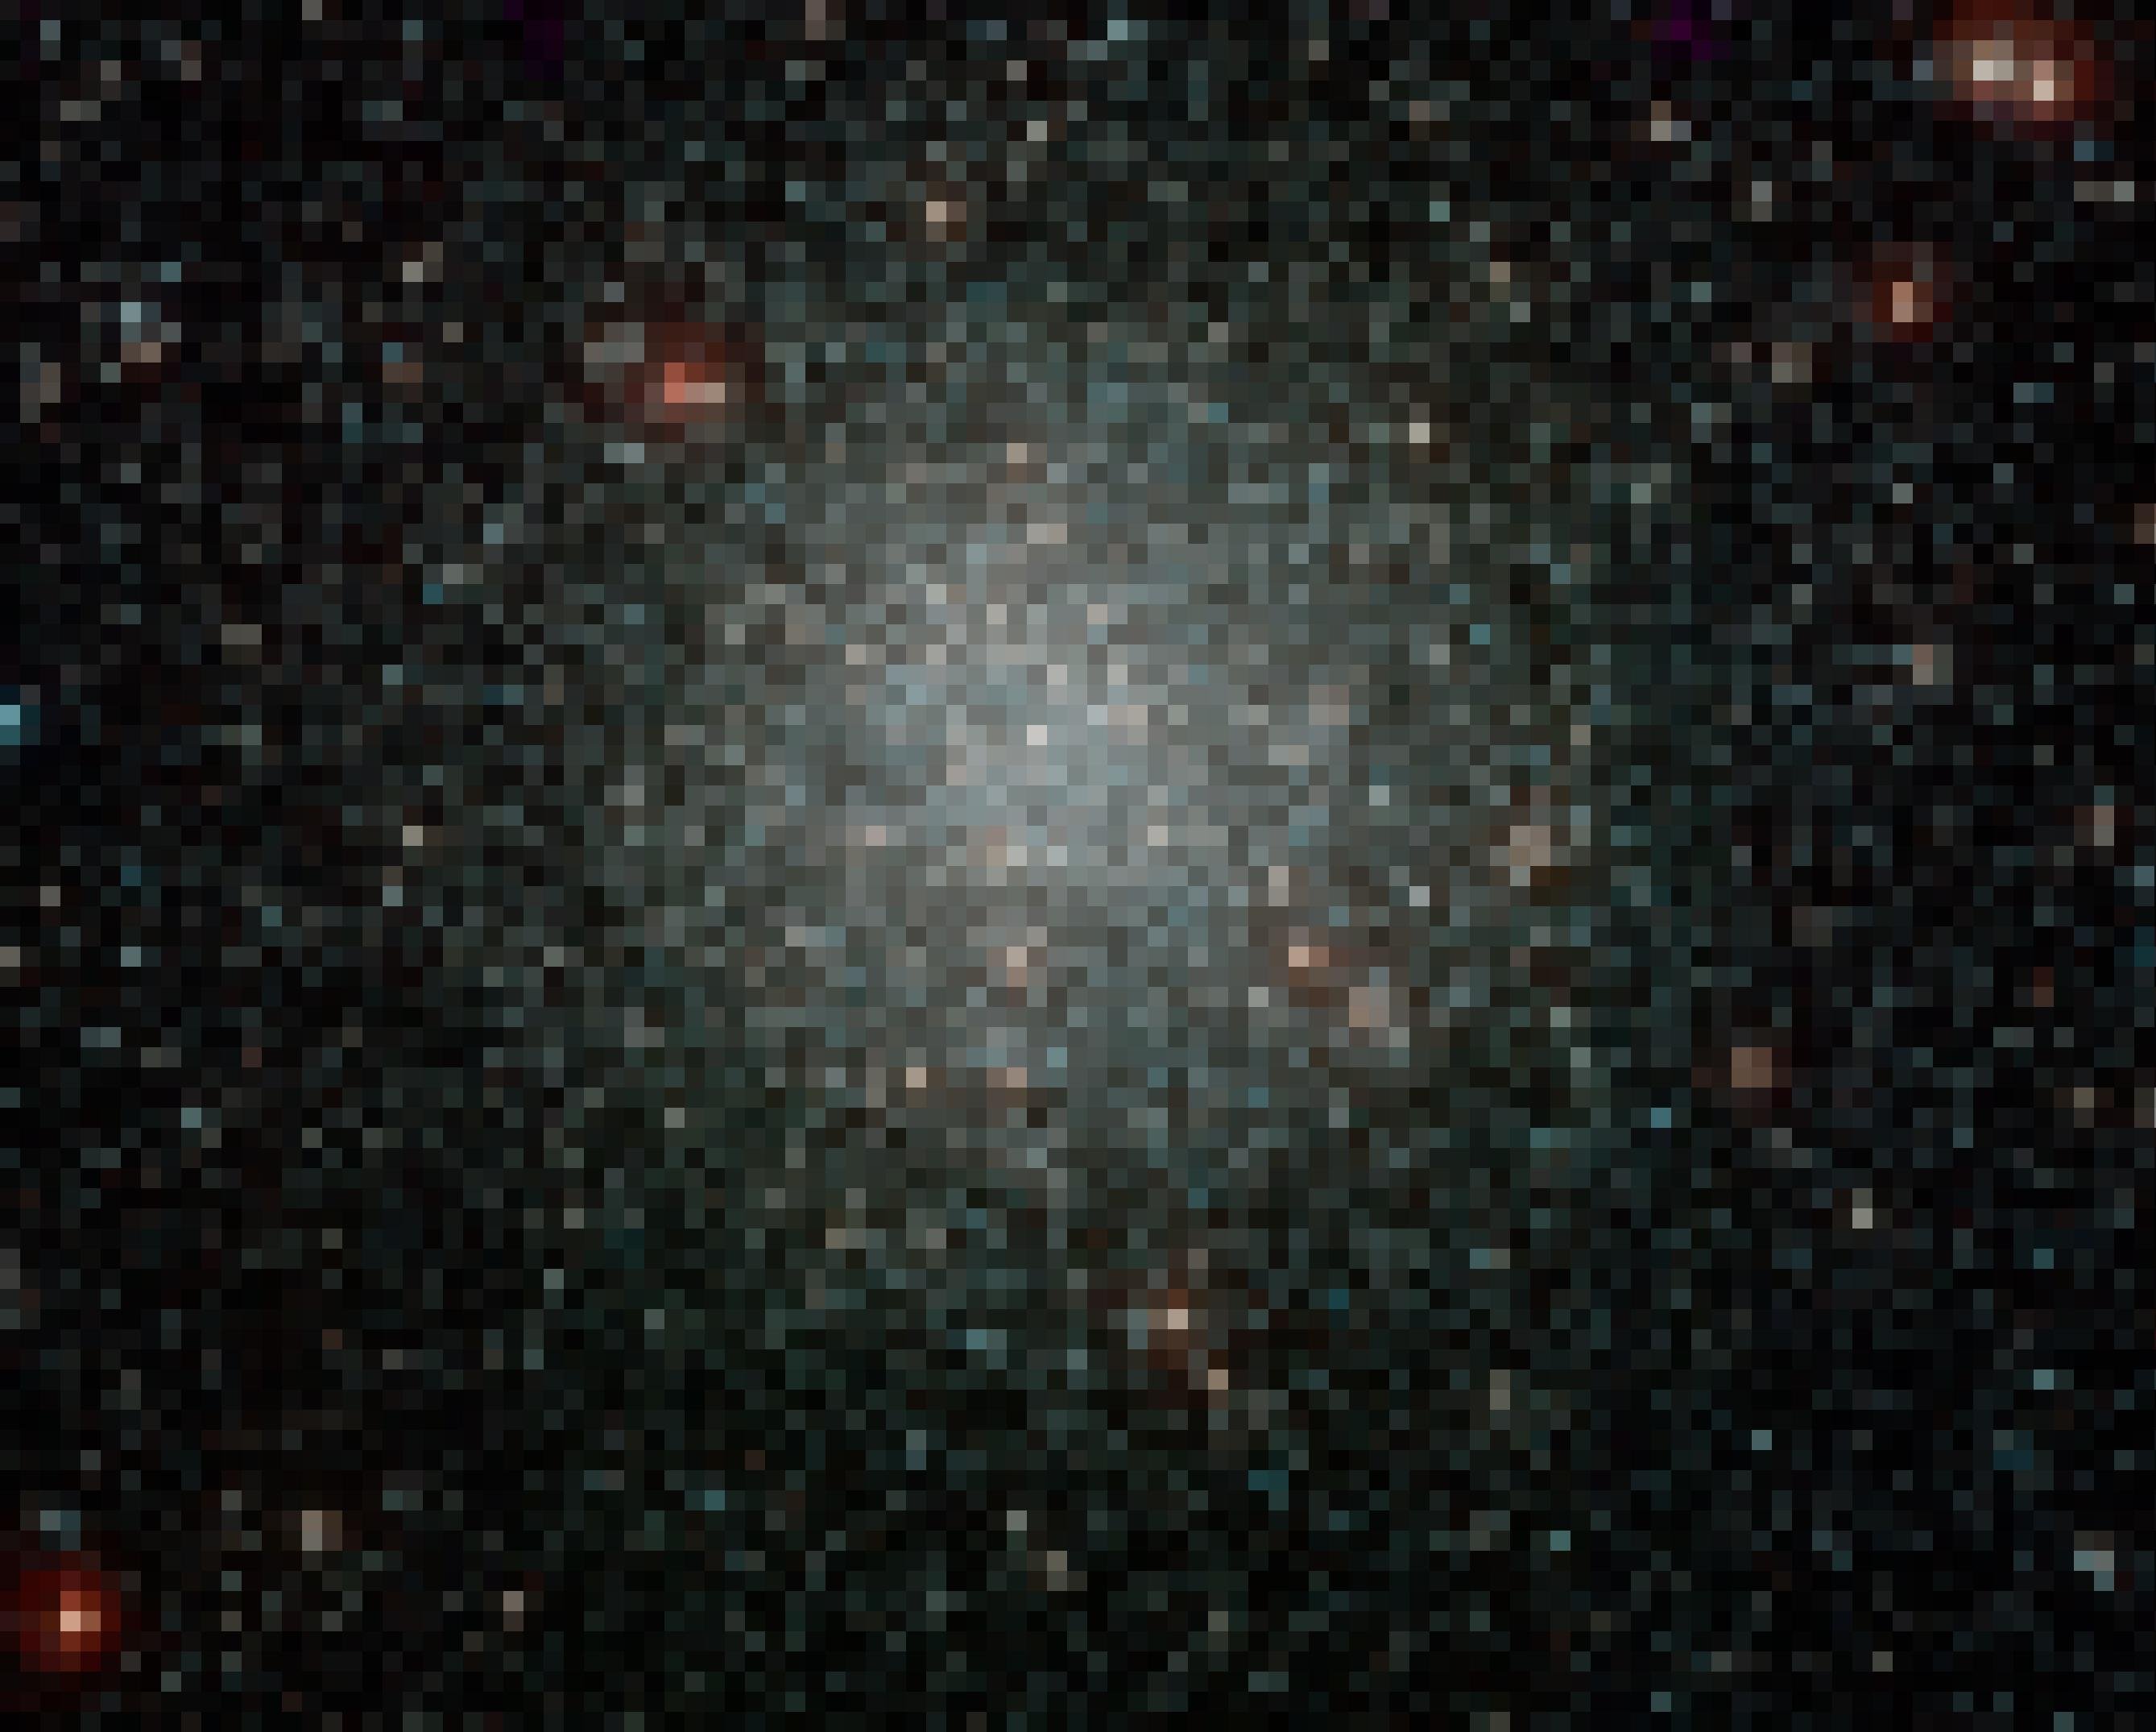 Zu sehen ist eine riesige Ansammlung von Sternen, die punkt- oder kreisförmig erscheinen, in roten und weißlichen Farben leuchten und sich zur Bildmitte hin kugelförmig konzentrieren. Die Sonnen bilden den Kugelsternhaufen NGC 3201, aufgenommen vom 2,2-Meter-Teleskop der ESO/MPG auf La Silla in Chile. Die Sterne in einem solchen Haufen sind eher klein und haben eine extrem lange Lebensdauer – sie sind mindestens so alt wie die Milchstraße selbst. Kugelsternhaufen befinden sich außerhalb der Milchstraße und umkreisen sie in einem riesigen, kugelförmigen Raum, der „Halo“ genannt wird.